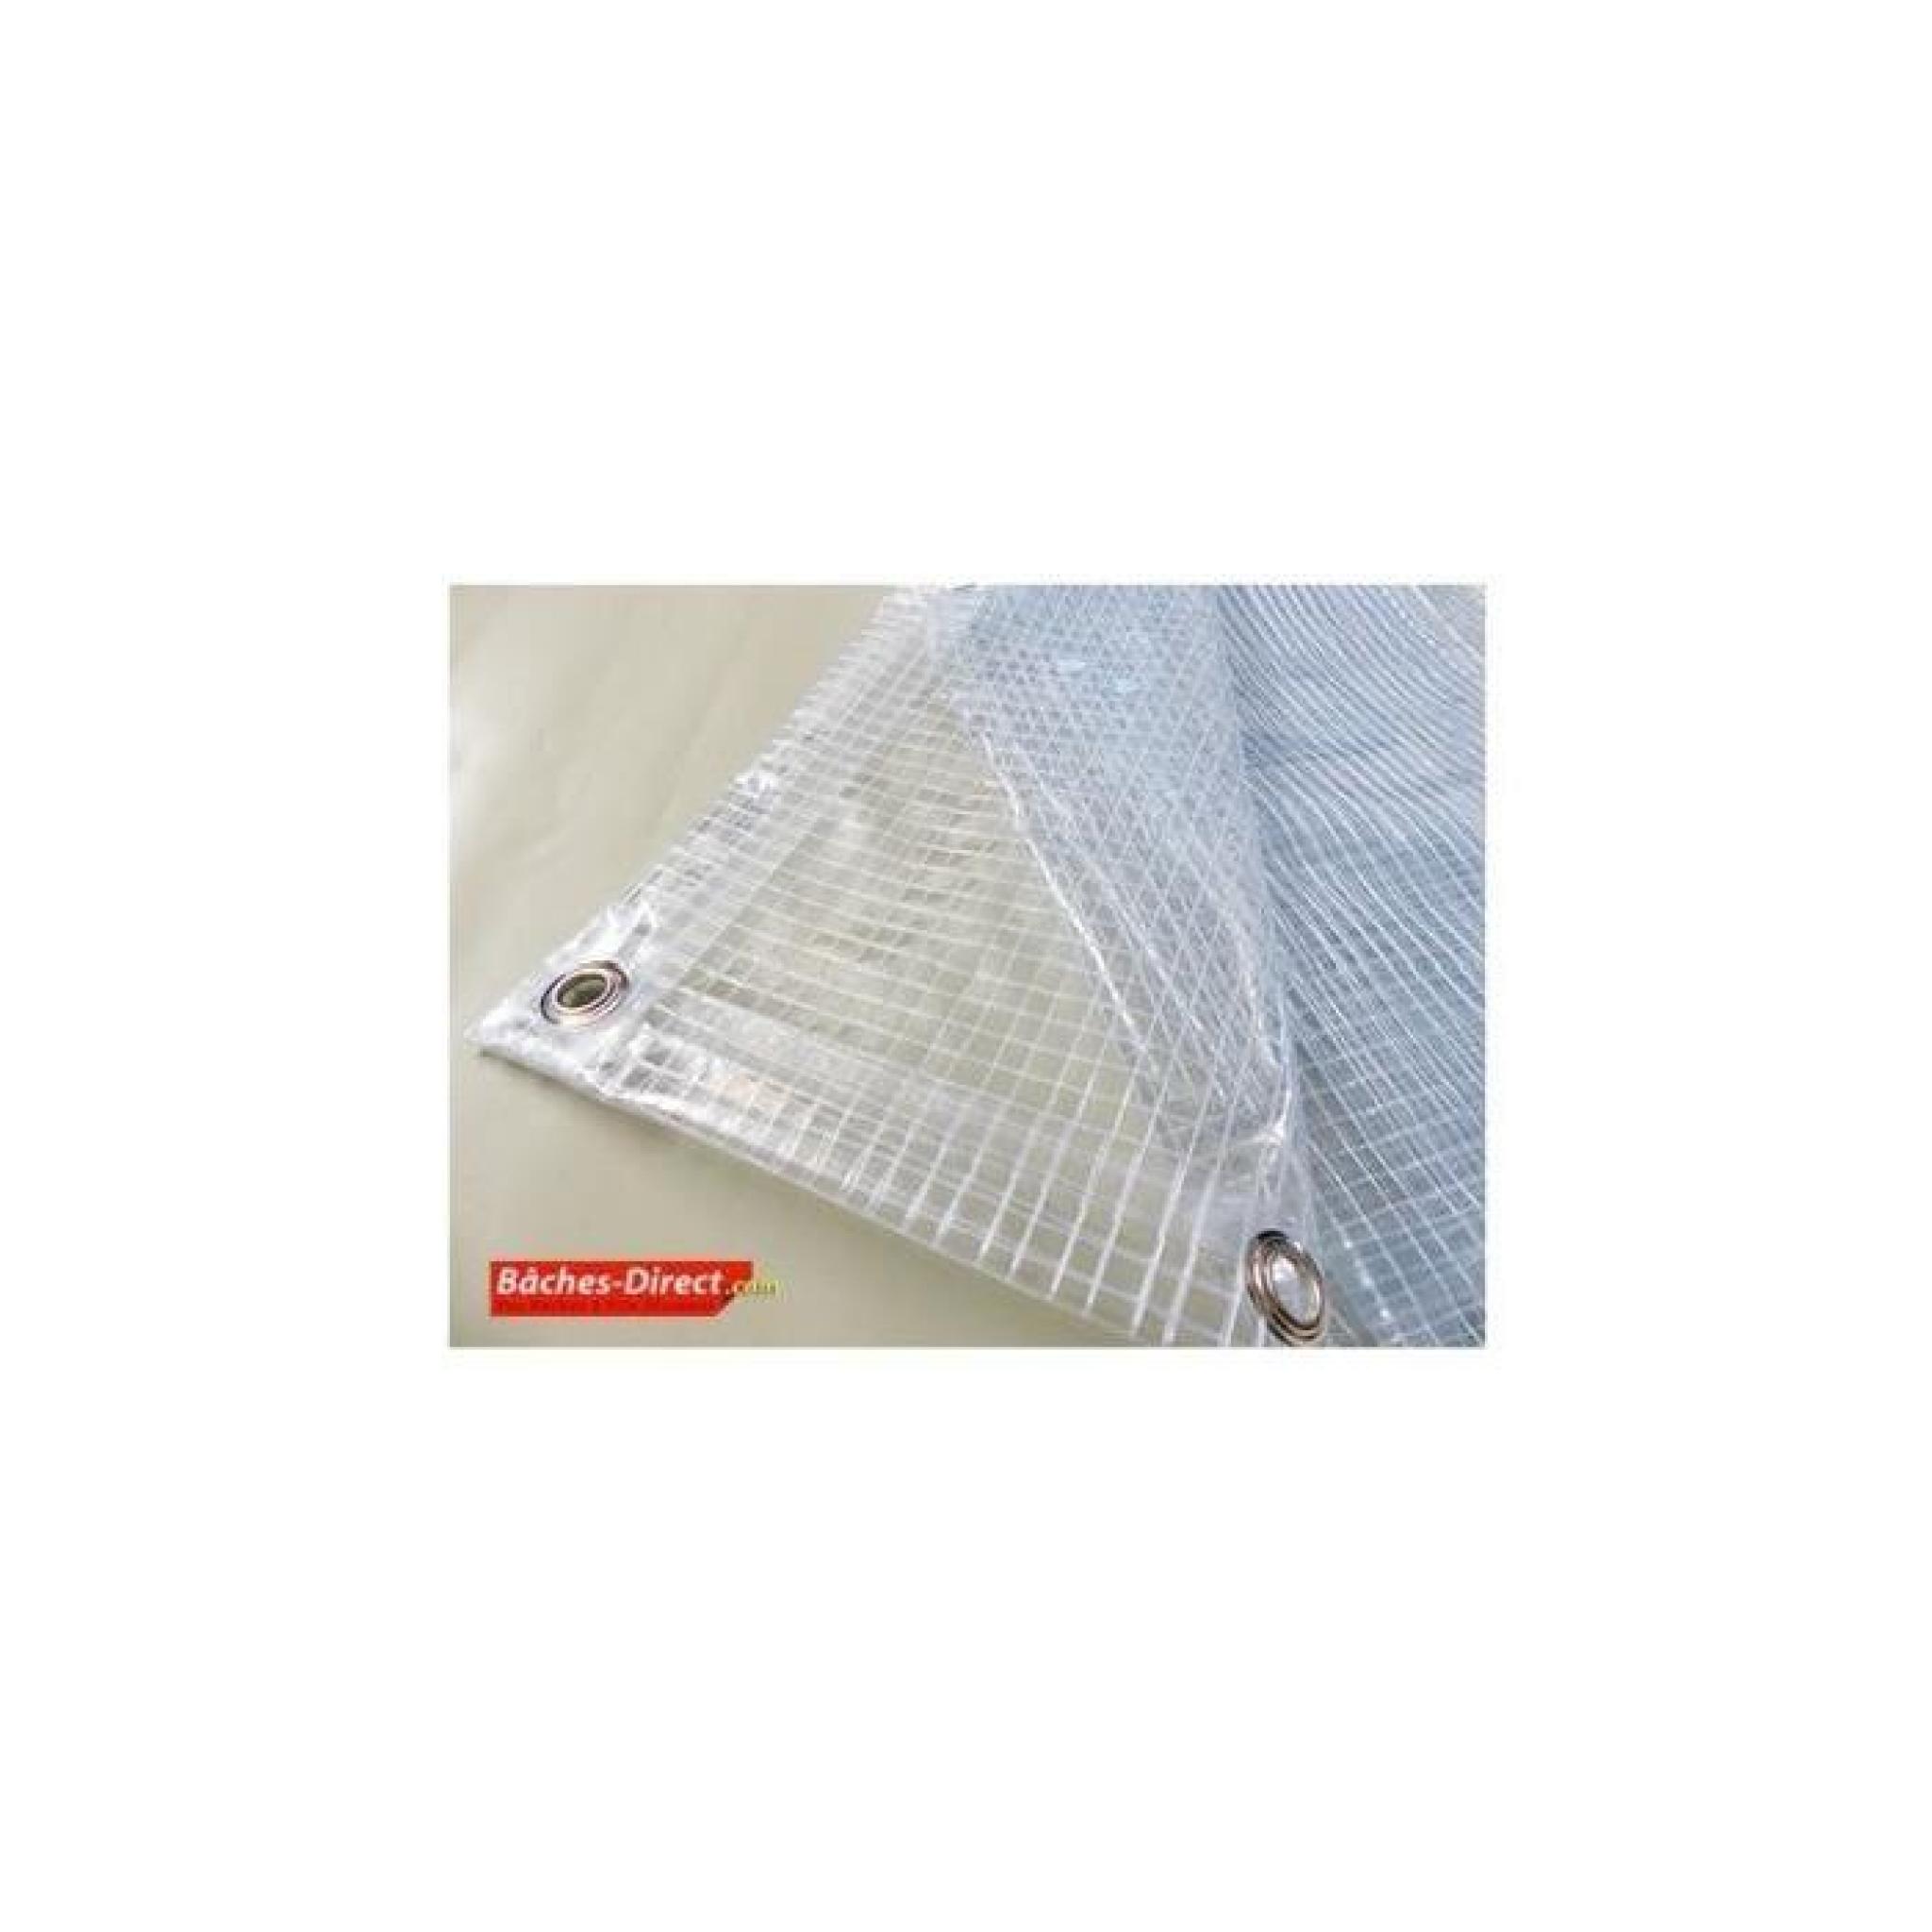 Bâche Pergola 400 g/m² - 5.8 x 7.5 m - bache transparente pour toile de pergola - bache imperméable Transparente Armée